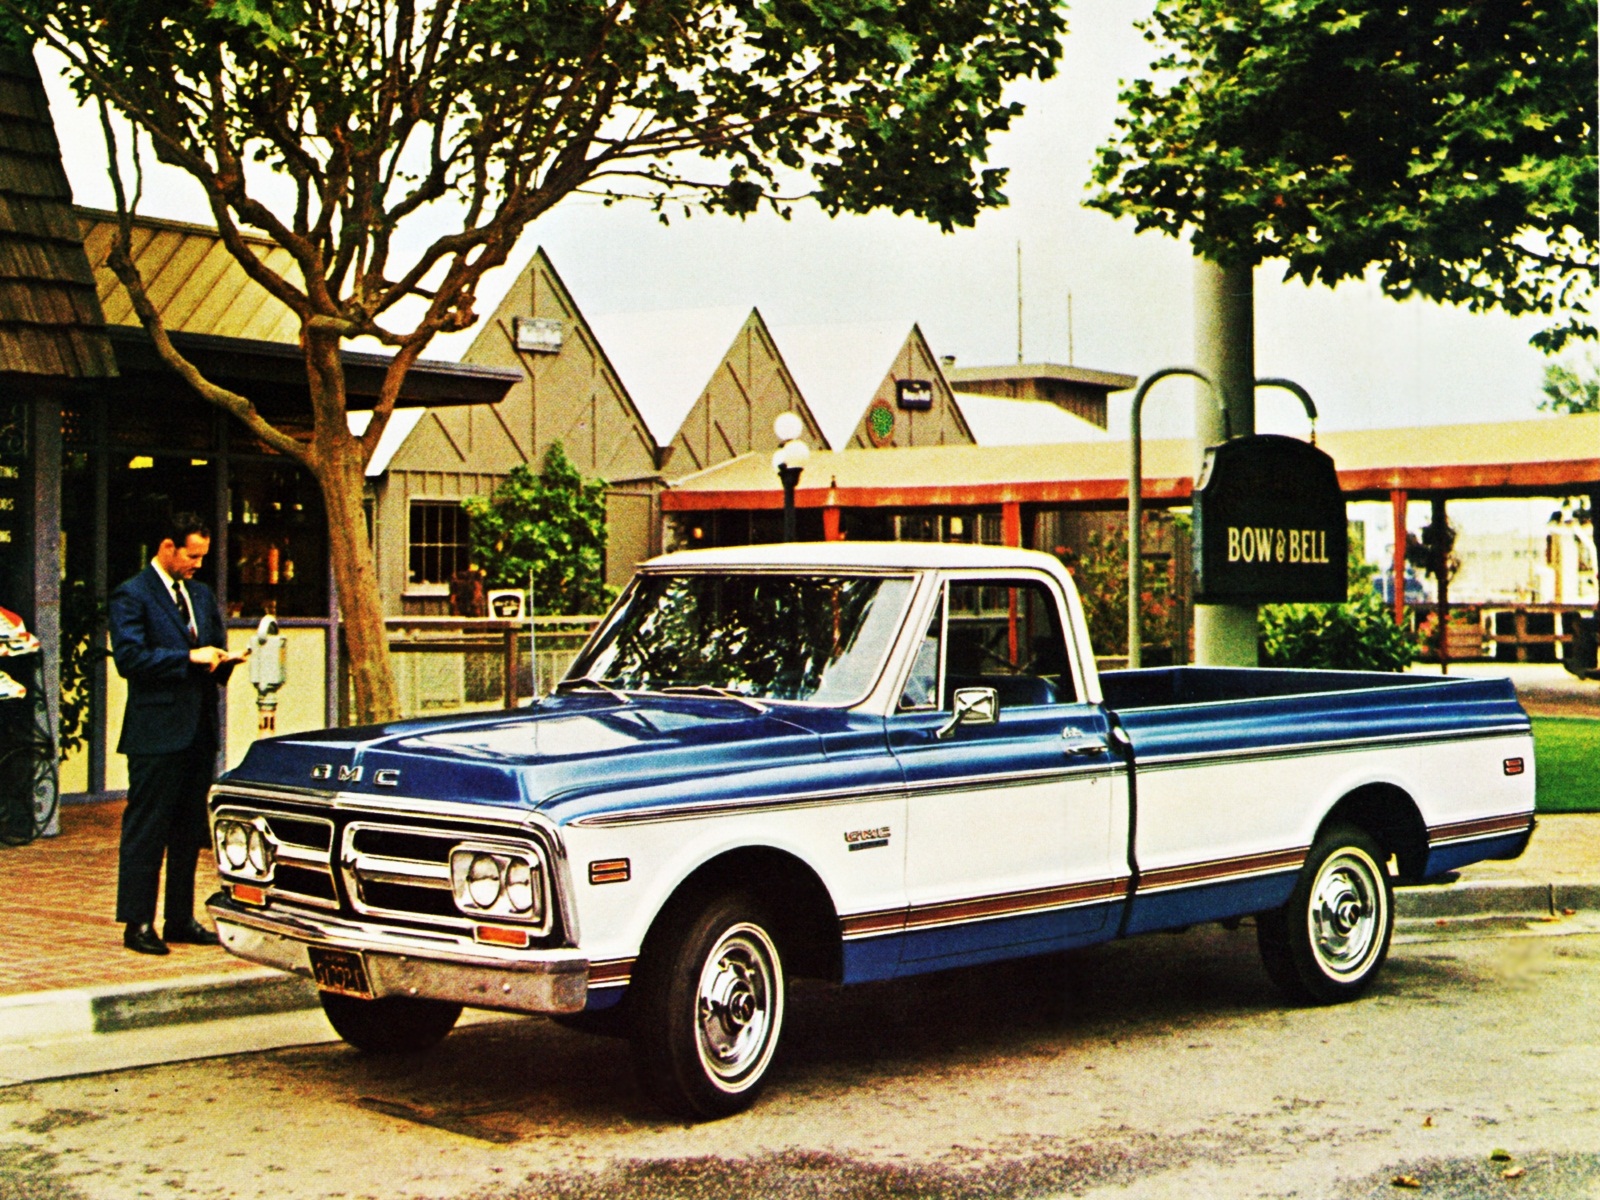 1974 GMC C1500 Pickup truck classic wallpaper 1600x1200 122960 1600x1200